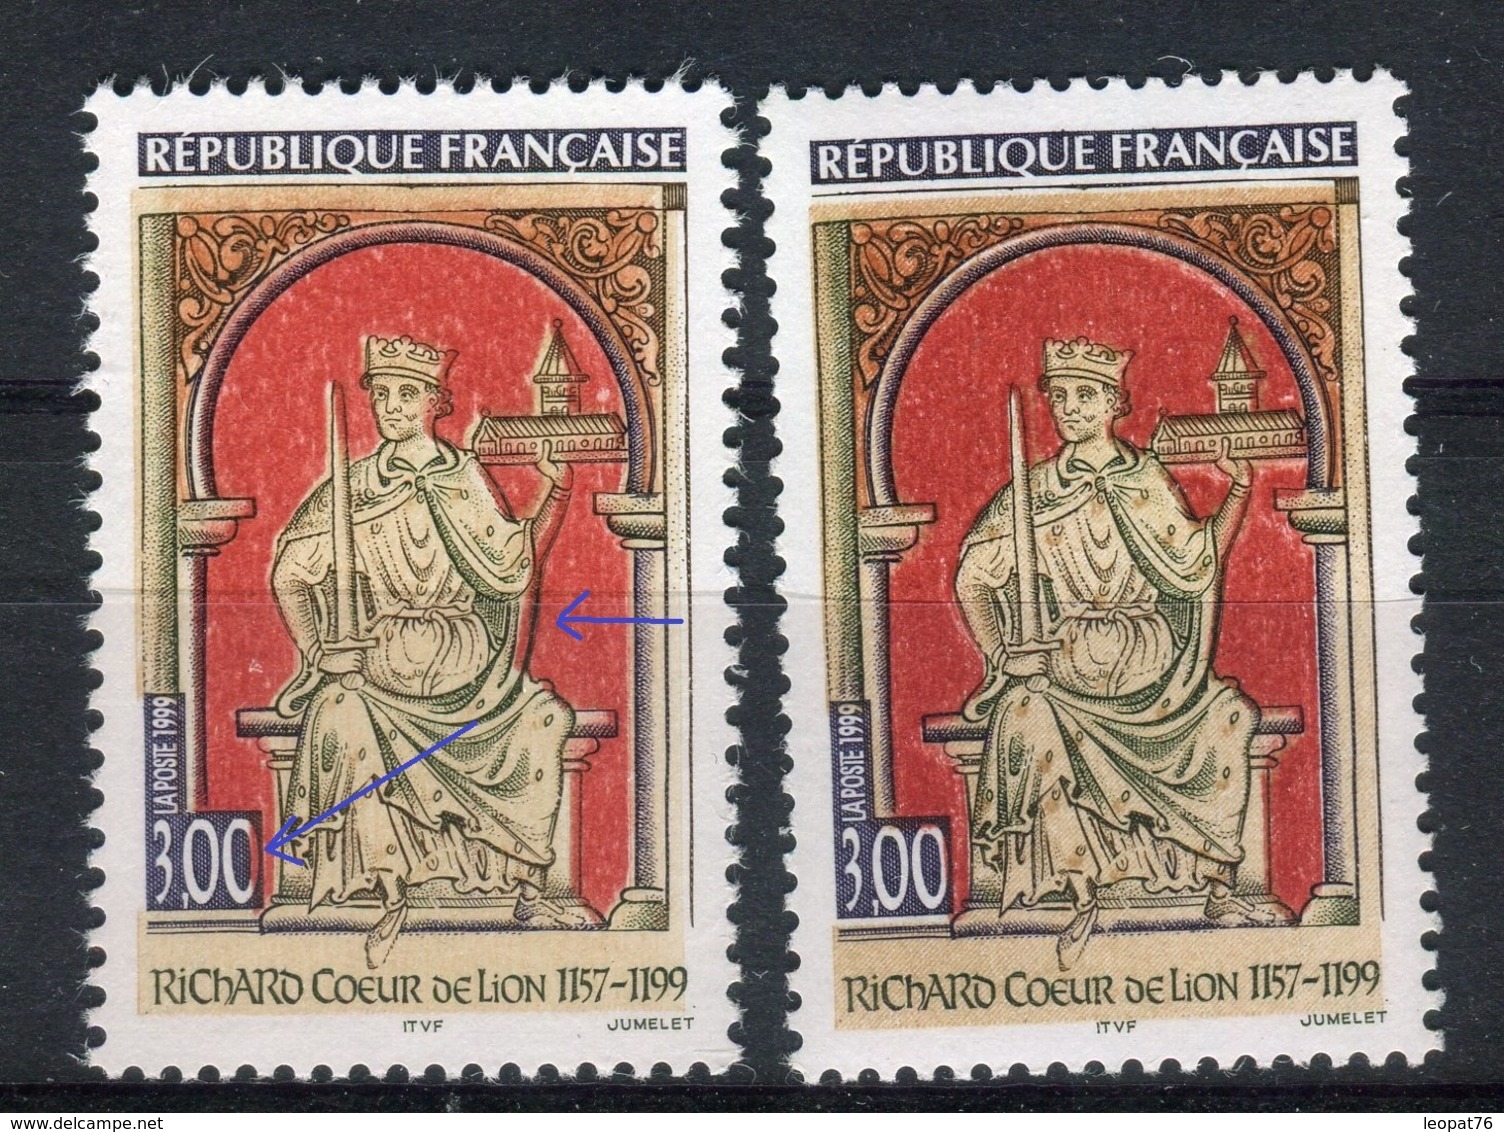 Variété N° Yvert 3238 , 1 Exemplaire Avec Le Rouge Décalé Vers La Gauche + 1 Normal , Neufs Luxe - Prix Fixe - Réf V 759 - Unused Stamps